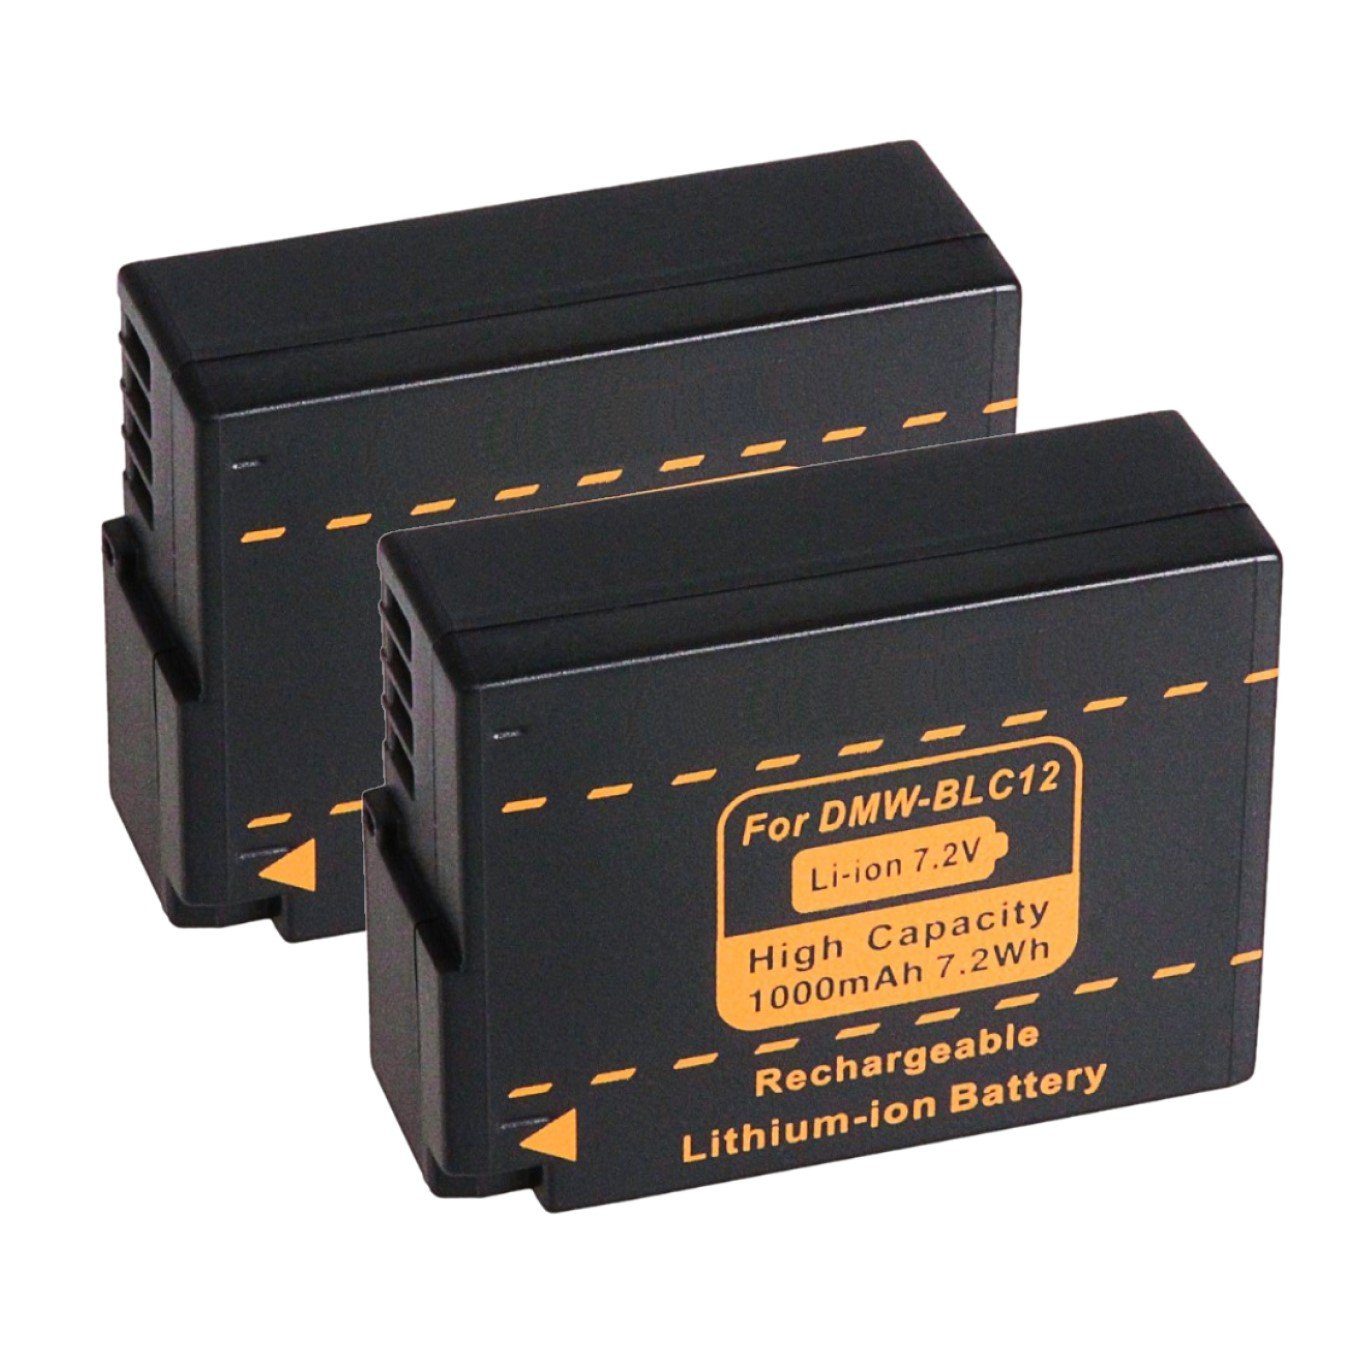 GOLDBATT 2x Akku für Panasonic DMW-BLC12 E Lumix DM FZ200 BLC12 BLC12PP FZ1000 G5 G6 GH2 Kamera-Akku Ersatzakku 1000 mAh (7,2 V, 2 St), 100% kompatibel mit den Original Akkus durch maßgefertigte Passform inklusive Überhitzungsschutz